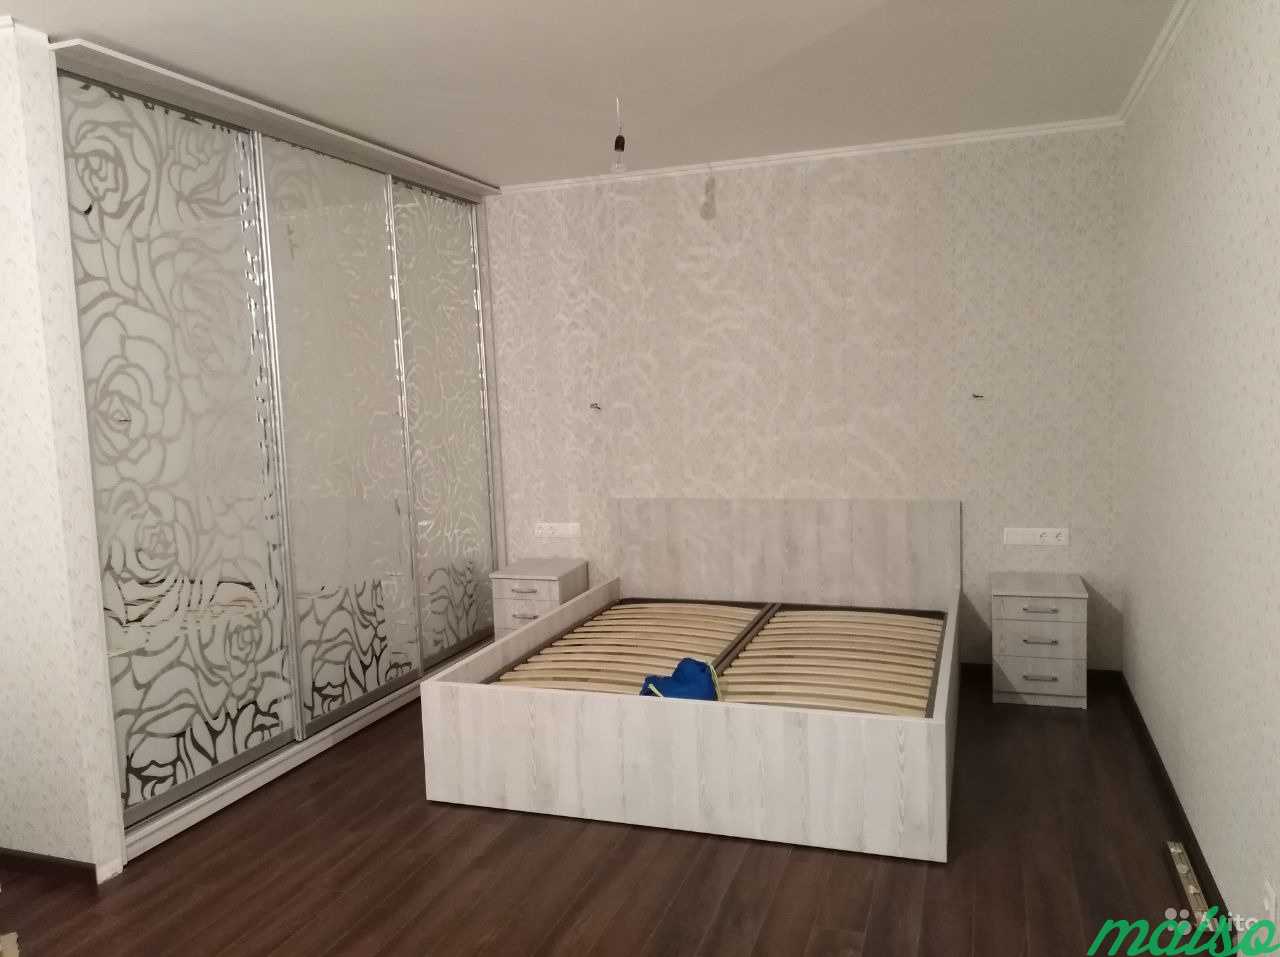 Мебель на заказ в Москве. Фото 1